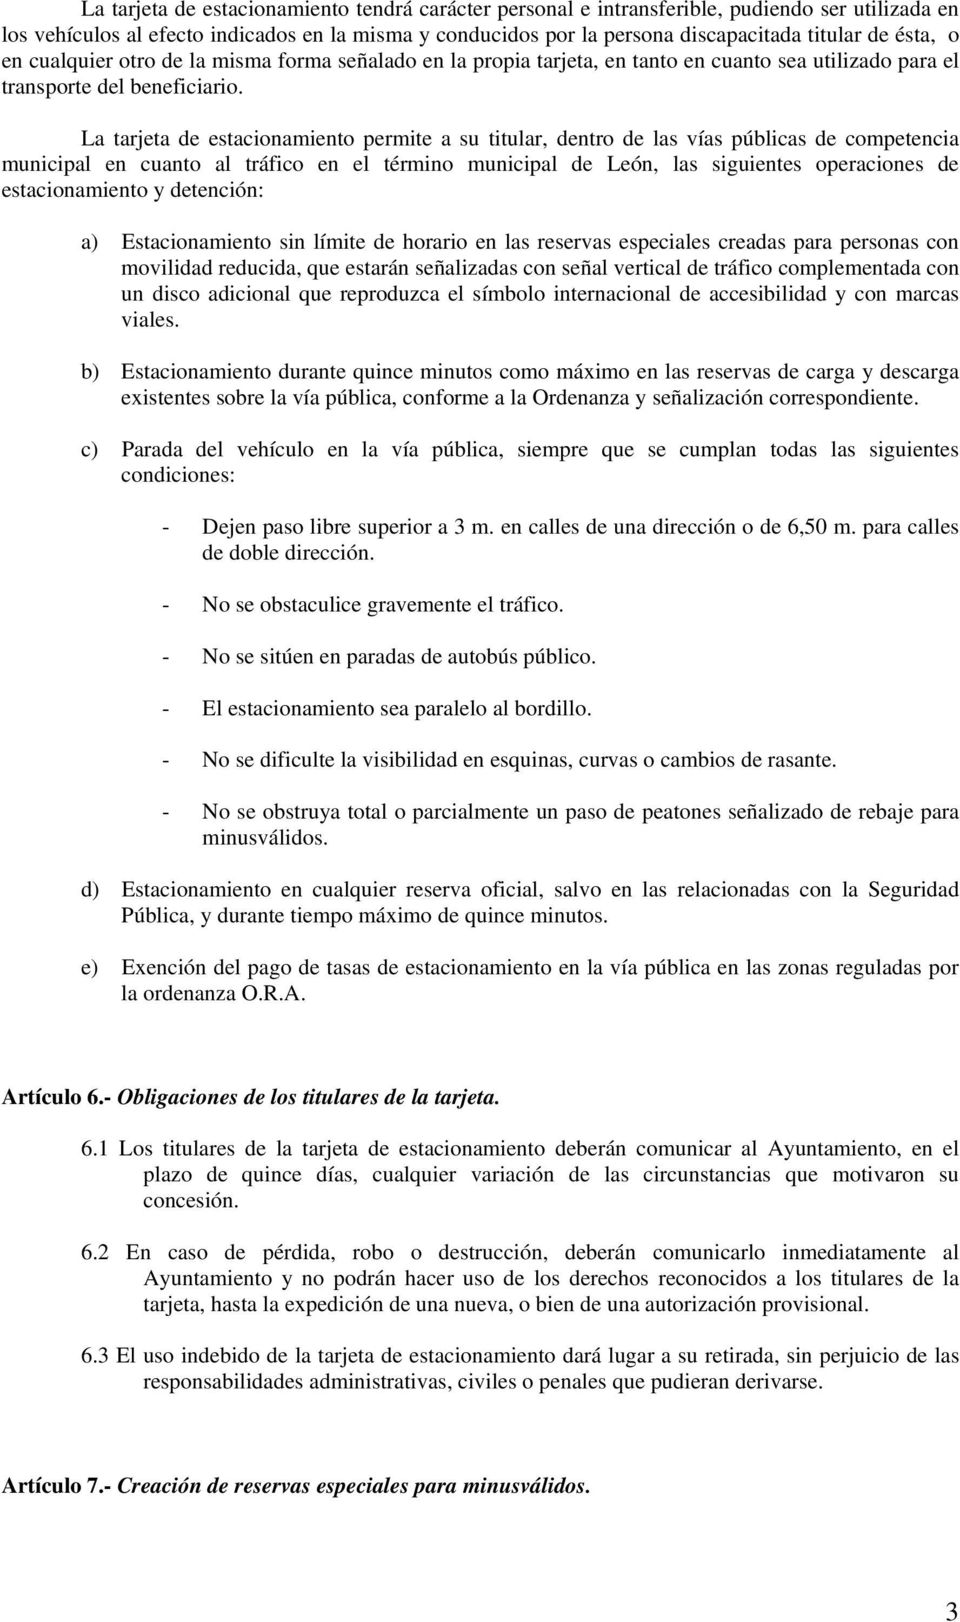 La tarjeta de estacionamiento permite a su titular, dentro de las vías públicas de competencia municipal en cuanto al tráfico en el término municipal de León, las siguientes operaciones de